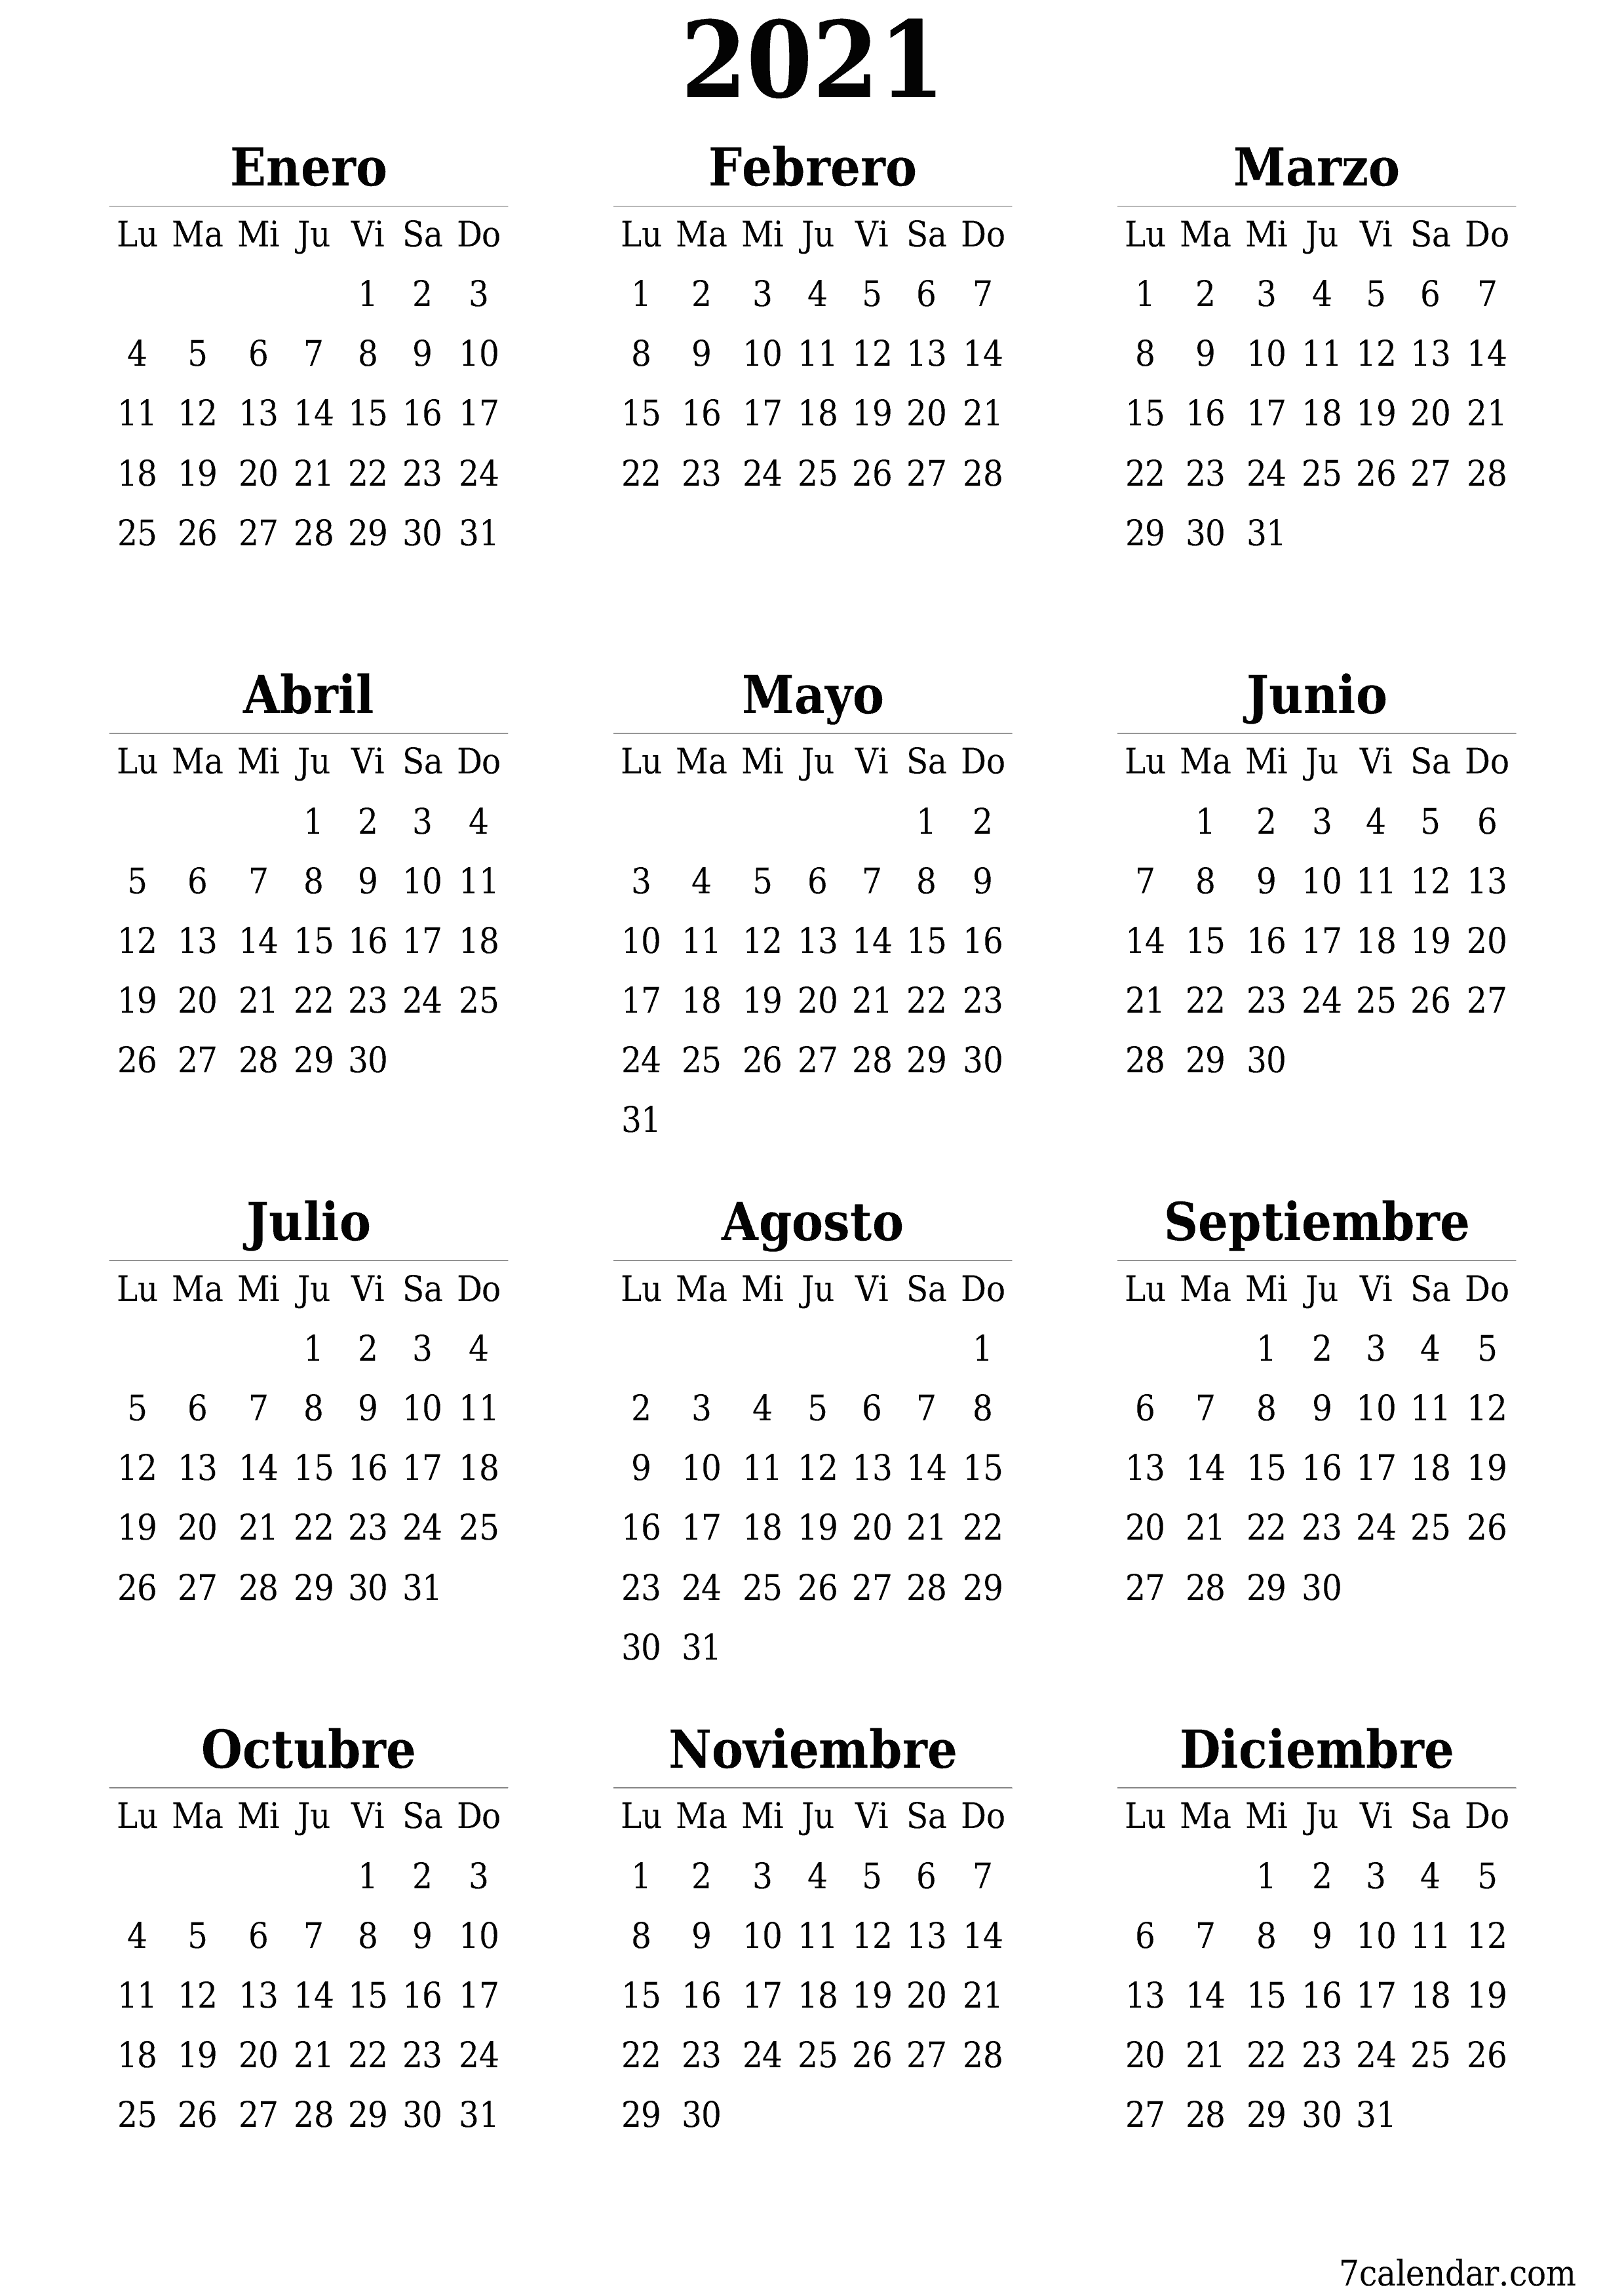 Calendario anual en blanco para el año 2021 guardar e imprimir en PDF PNG Spanish - 7calendar.com